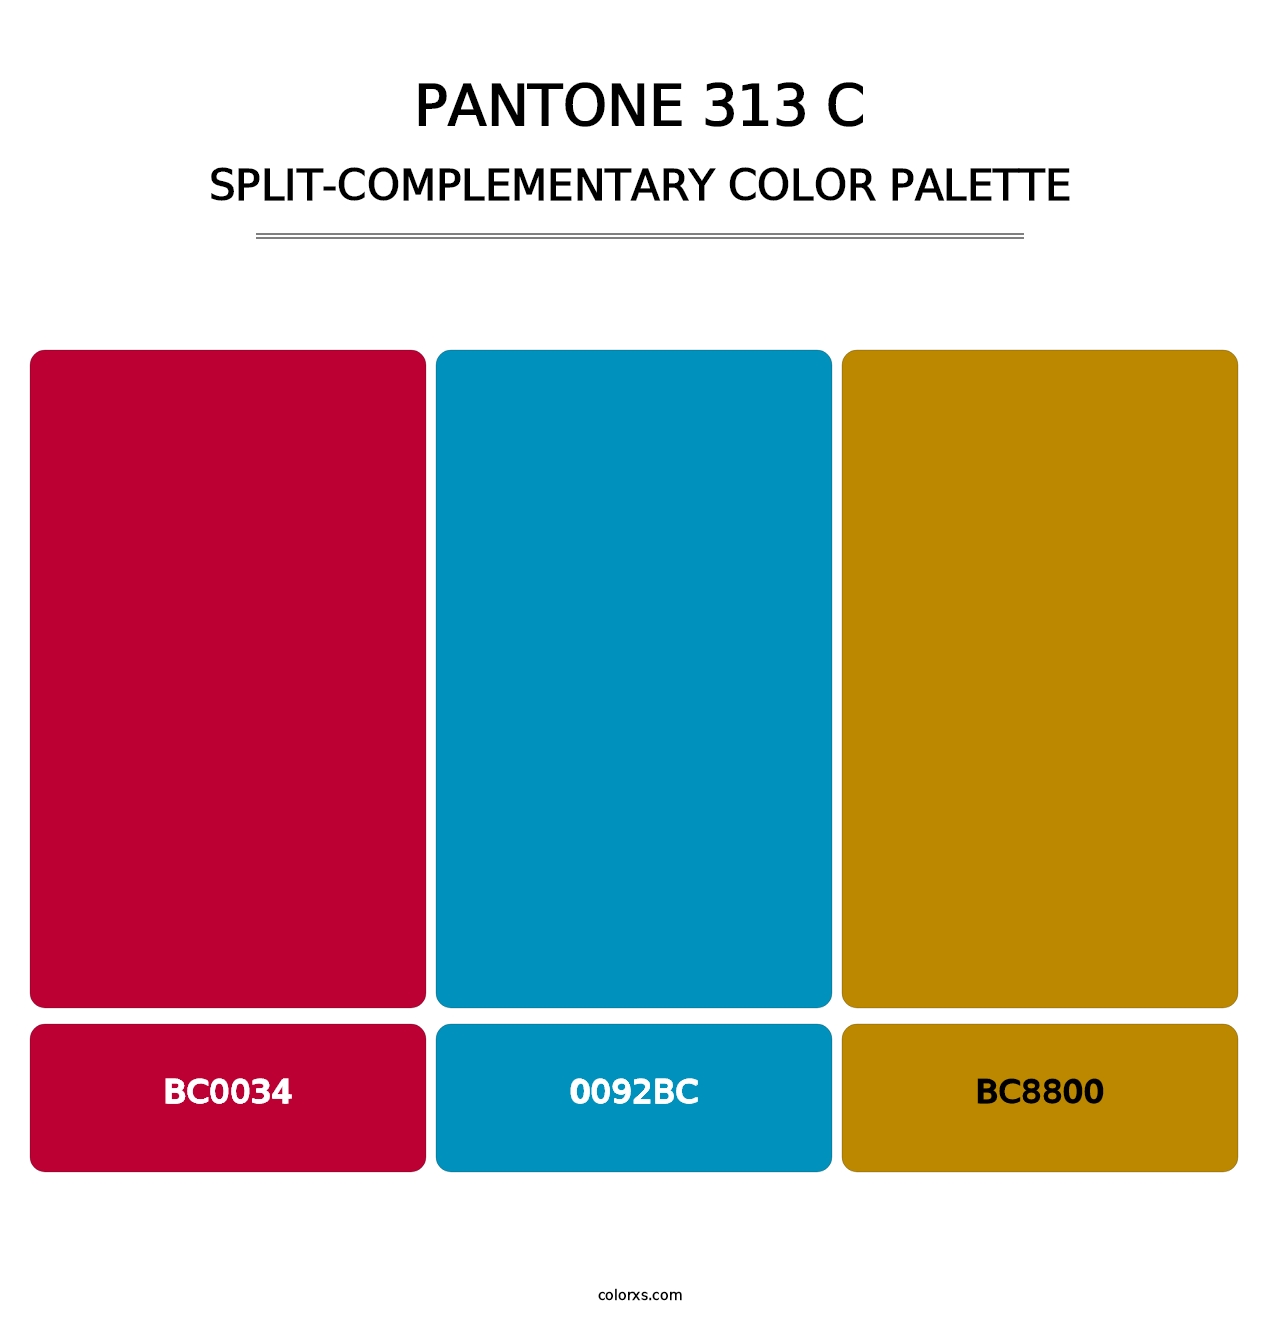 PANTONE 313 C - Split-Complementary Color Palette